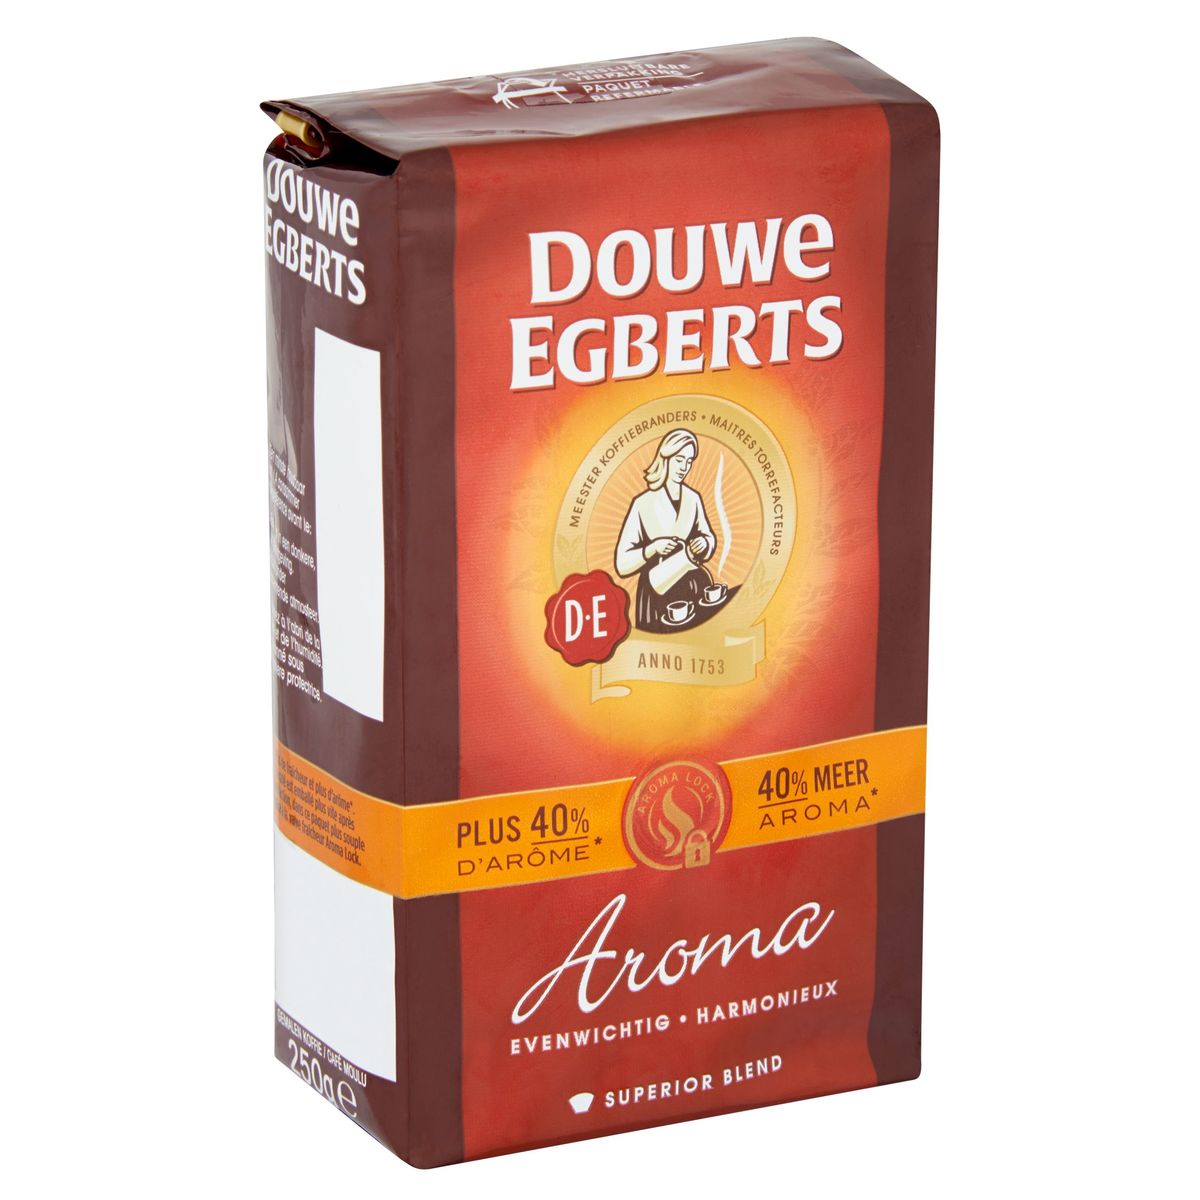 DOUWE EGBERTS Koffie Gemalen Aroma 250 g